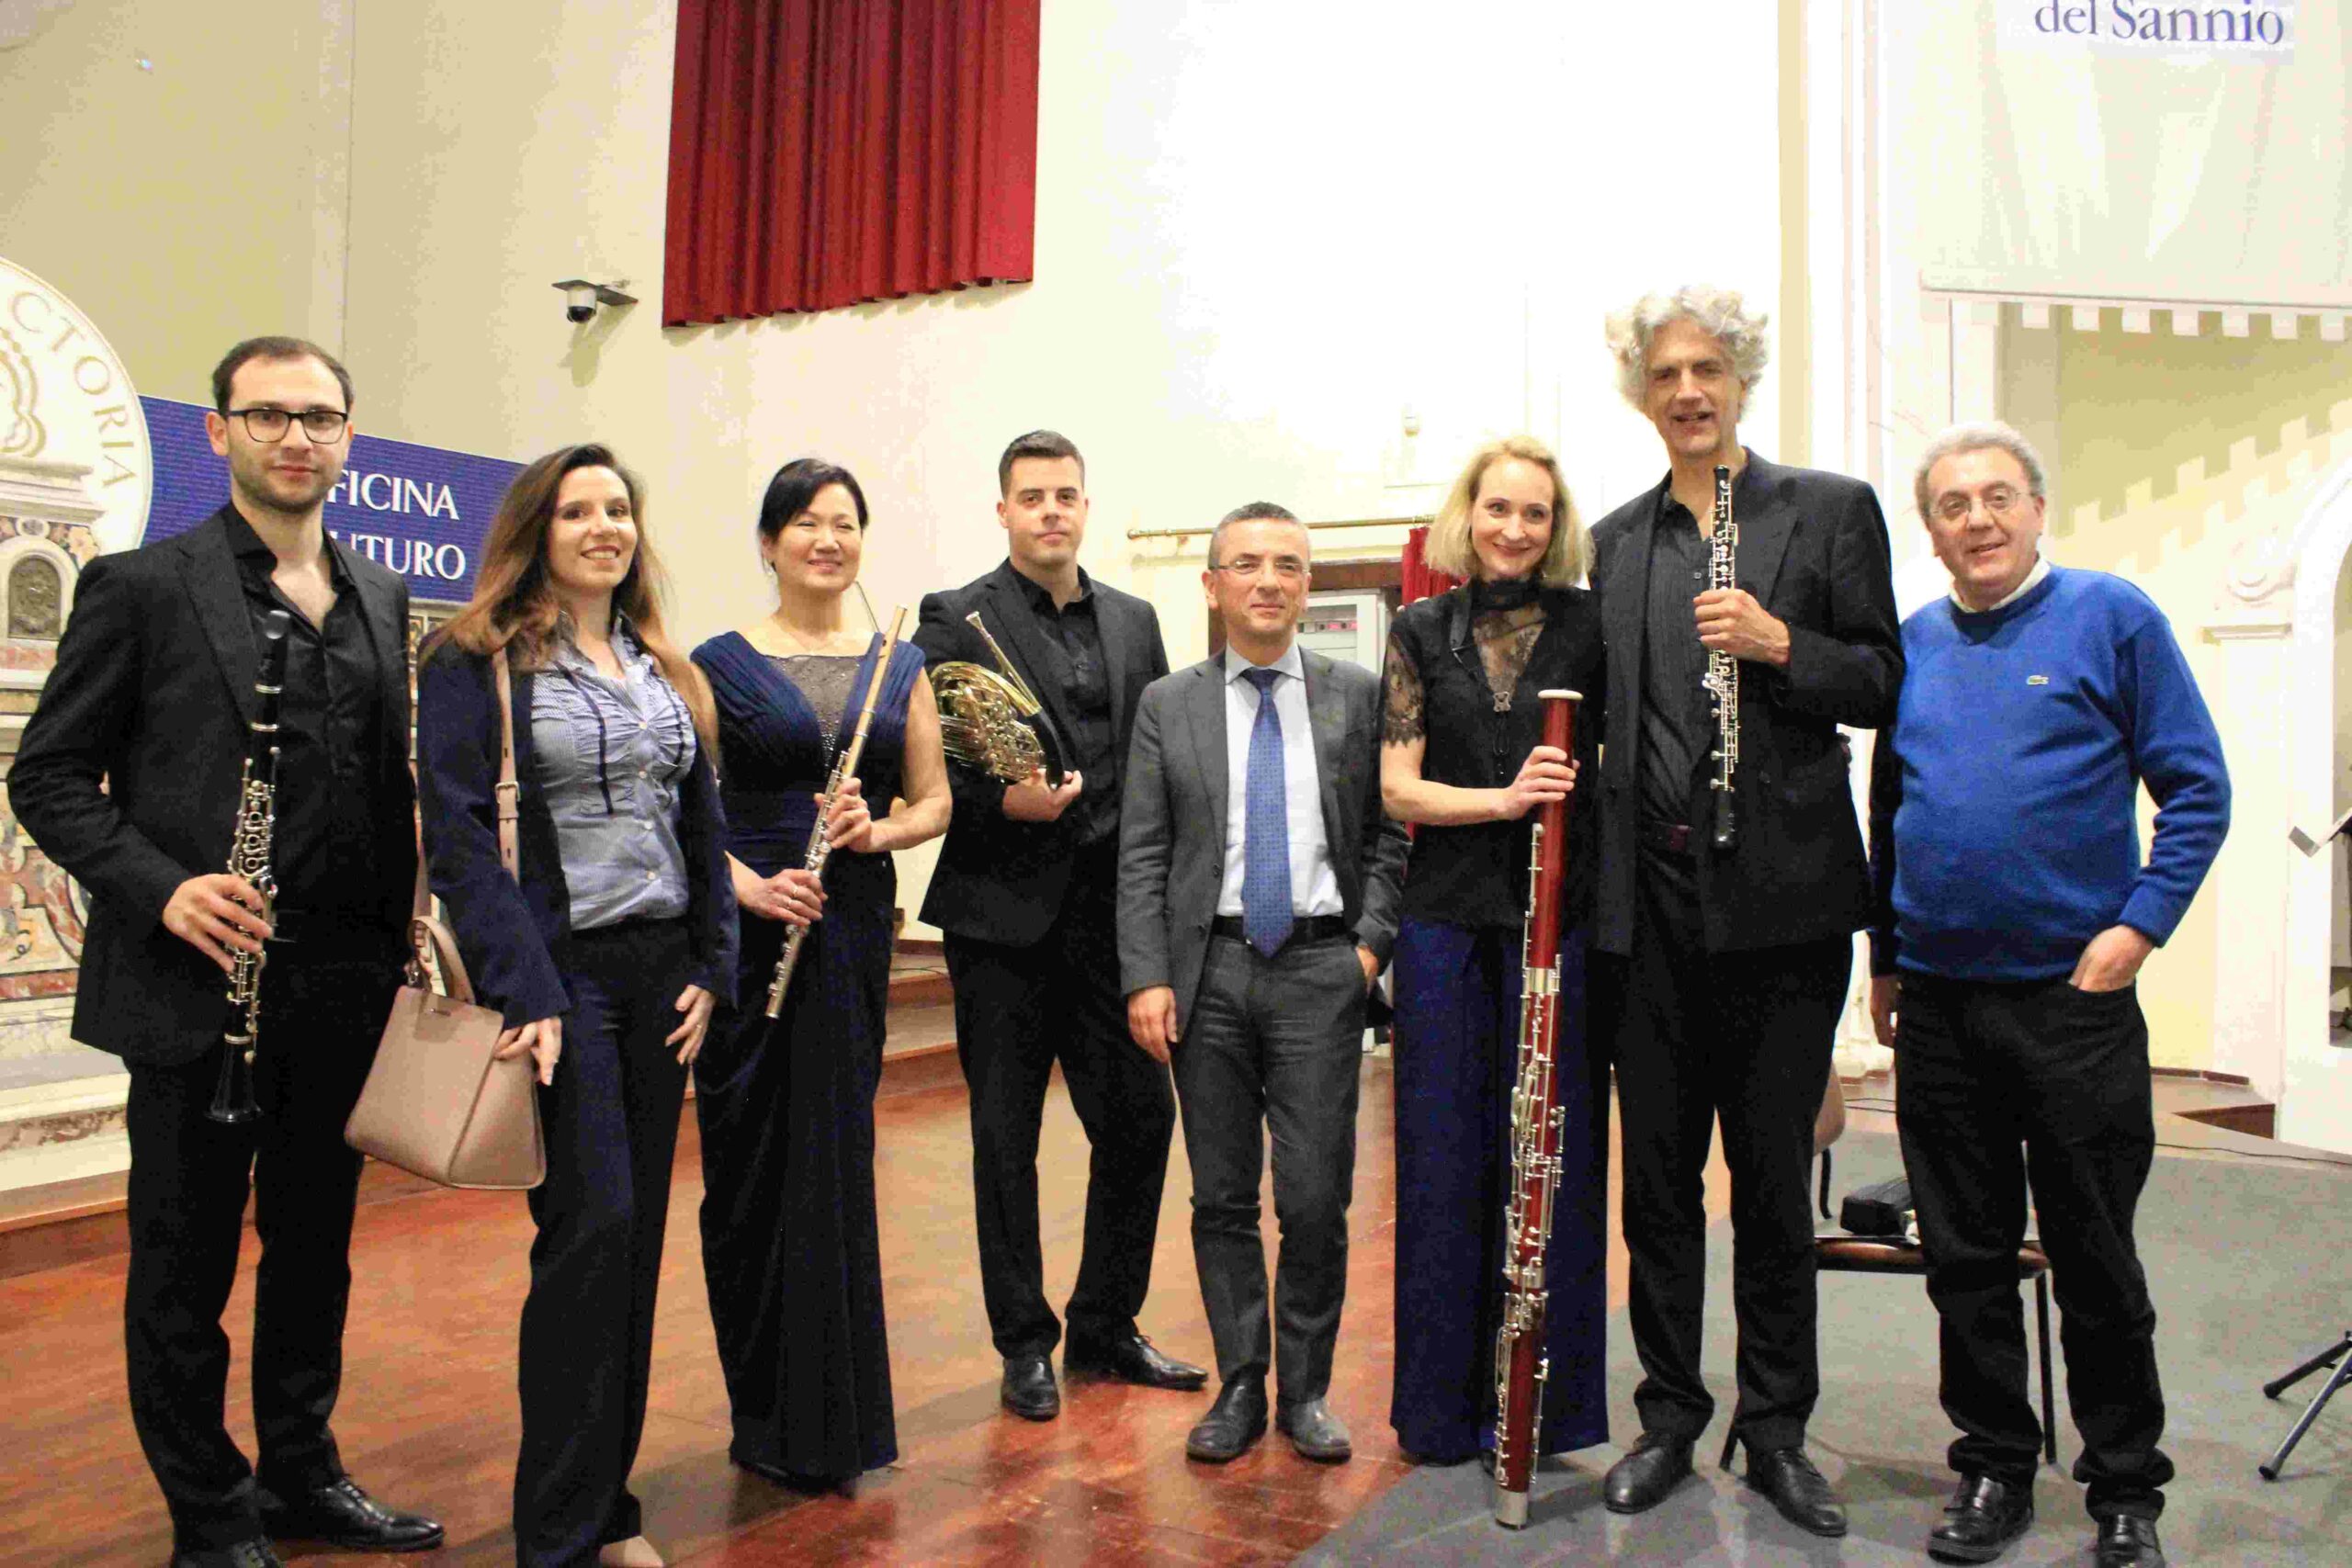 Il Quintetto di fiati dei “Berliner Philharmoniker” strega il pubblico del Sant’Agostino